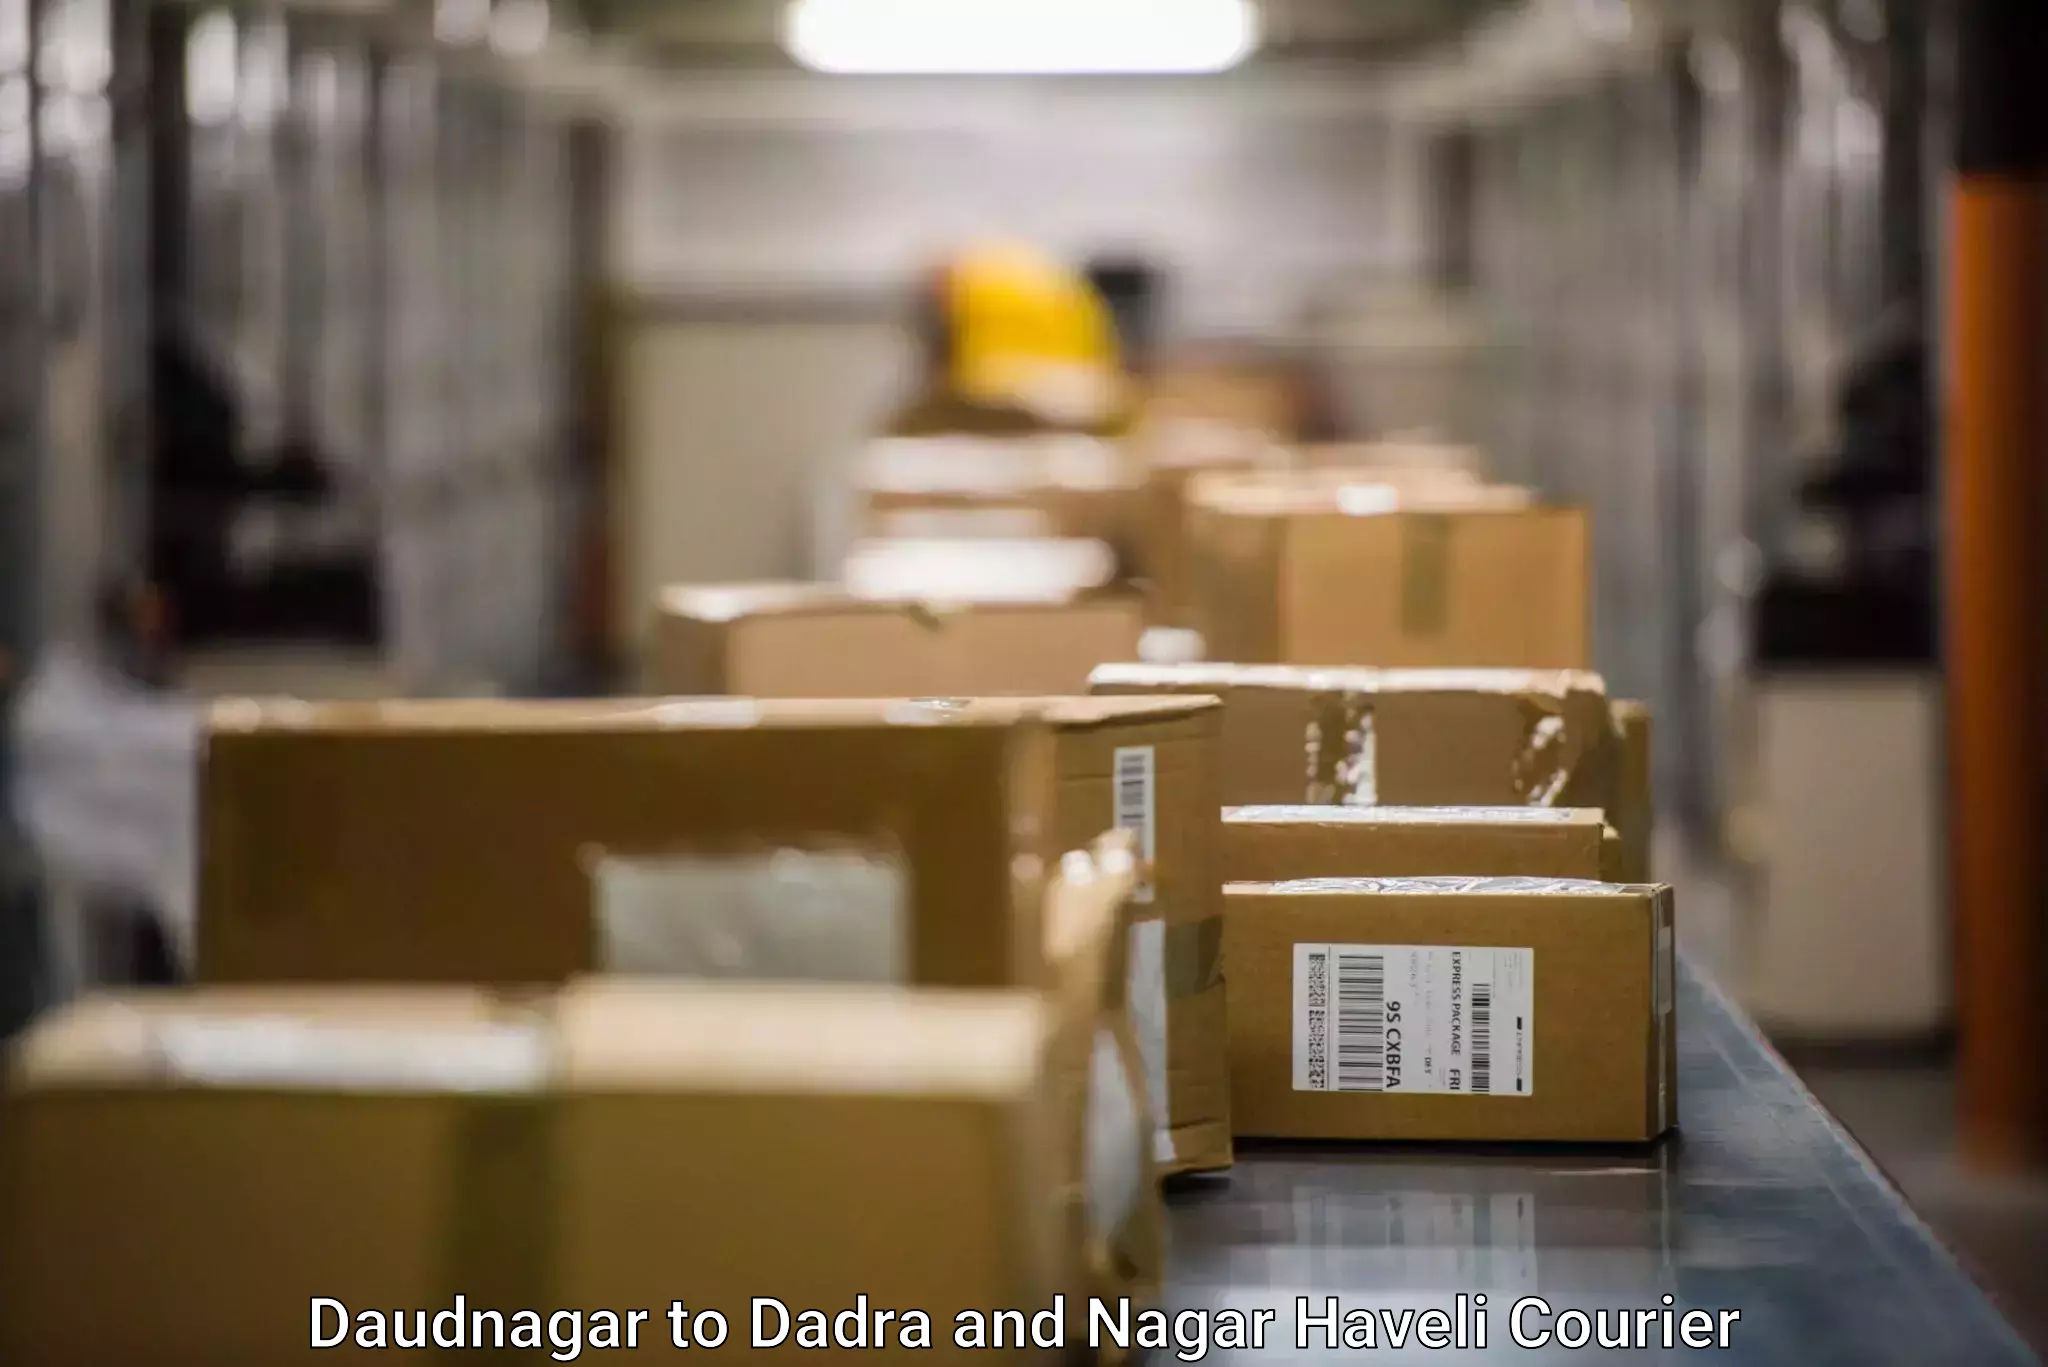 Business logistics support Daudnagar to Dadra and Nagar Haveli